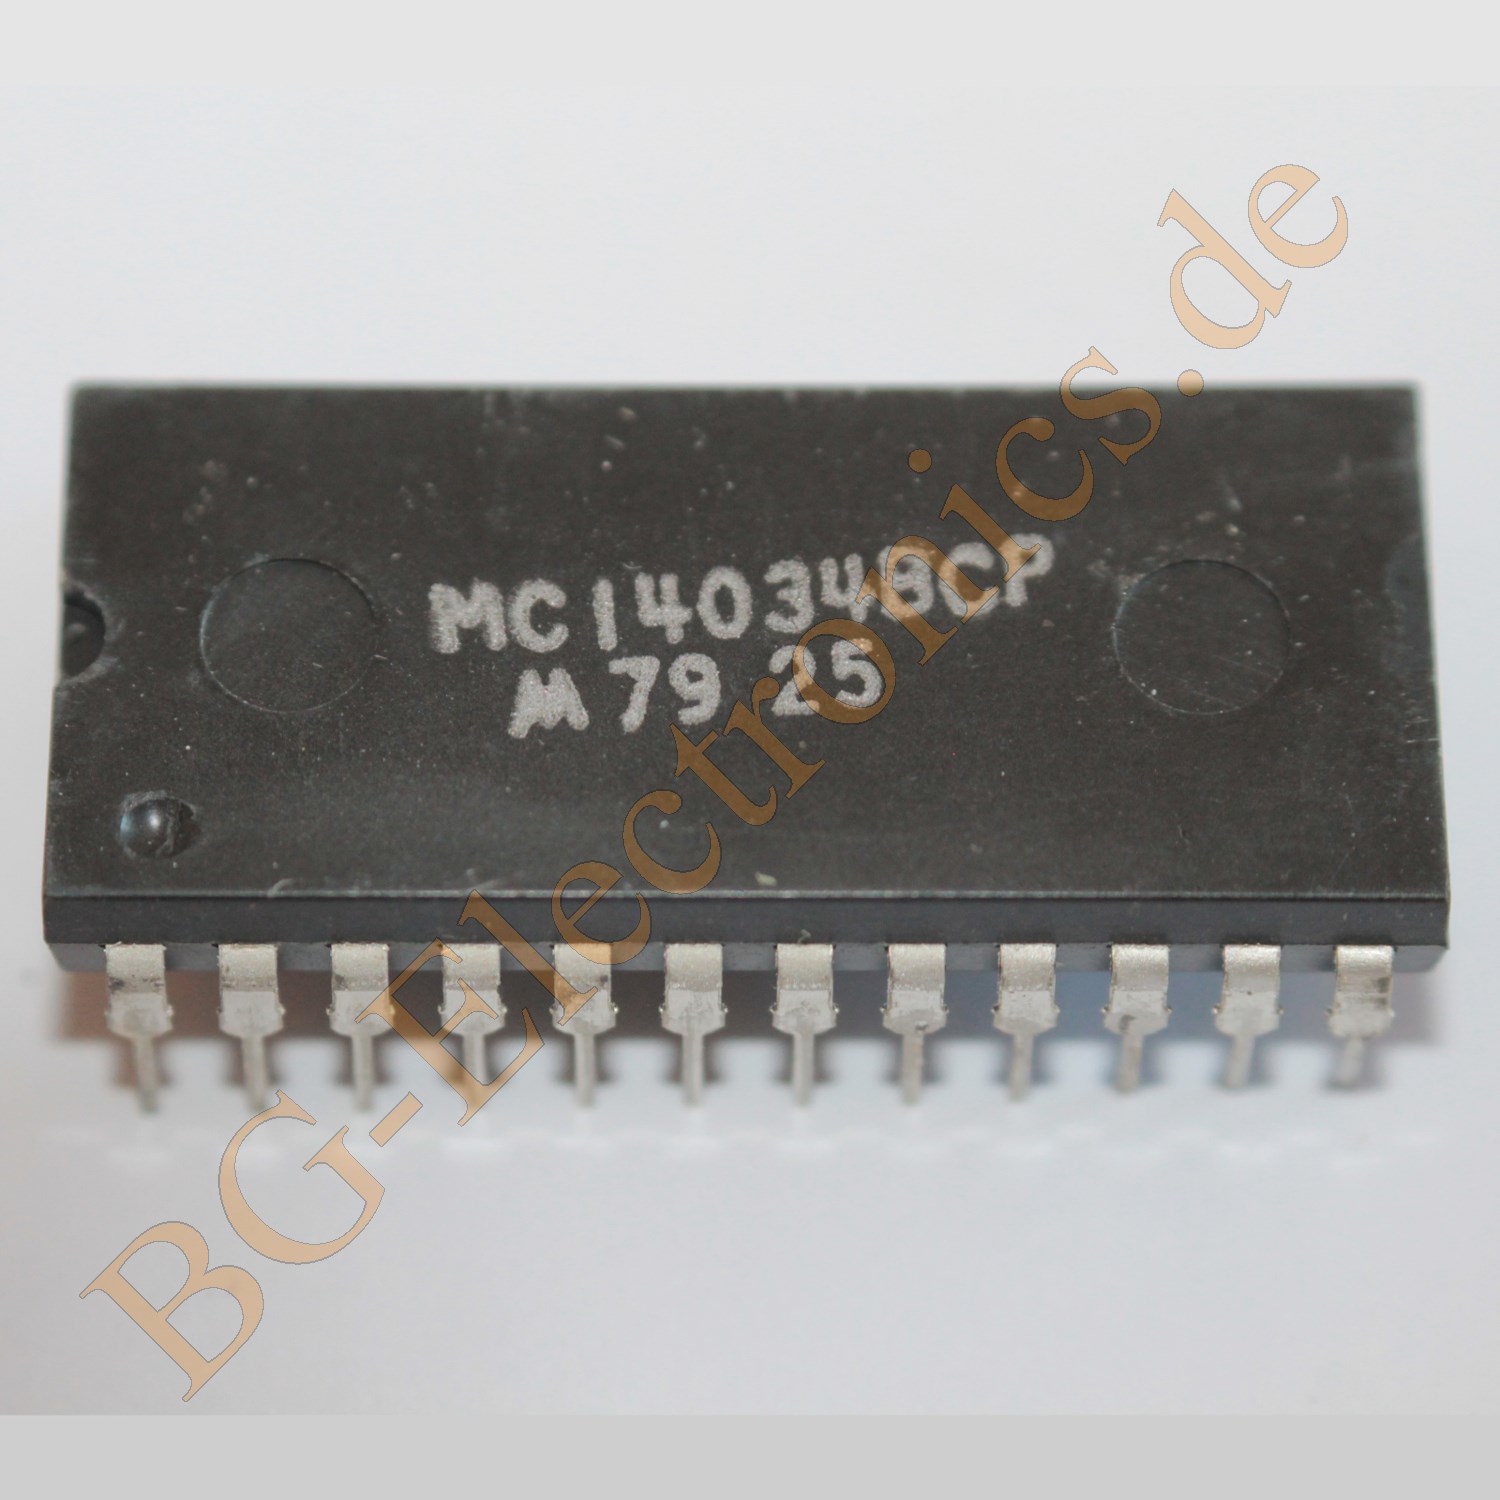 MC14034BCP